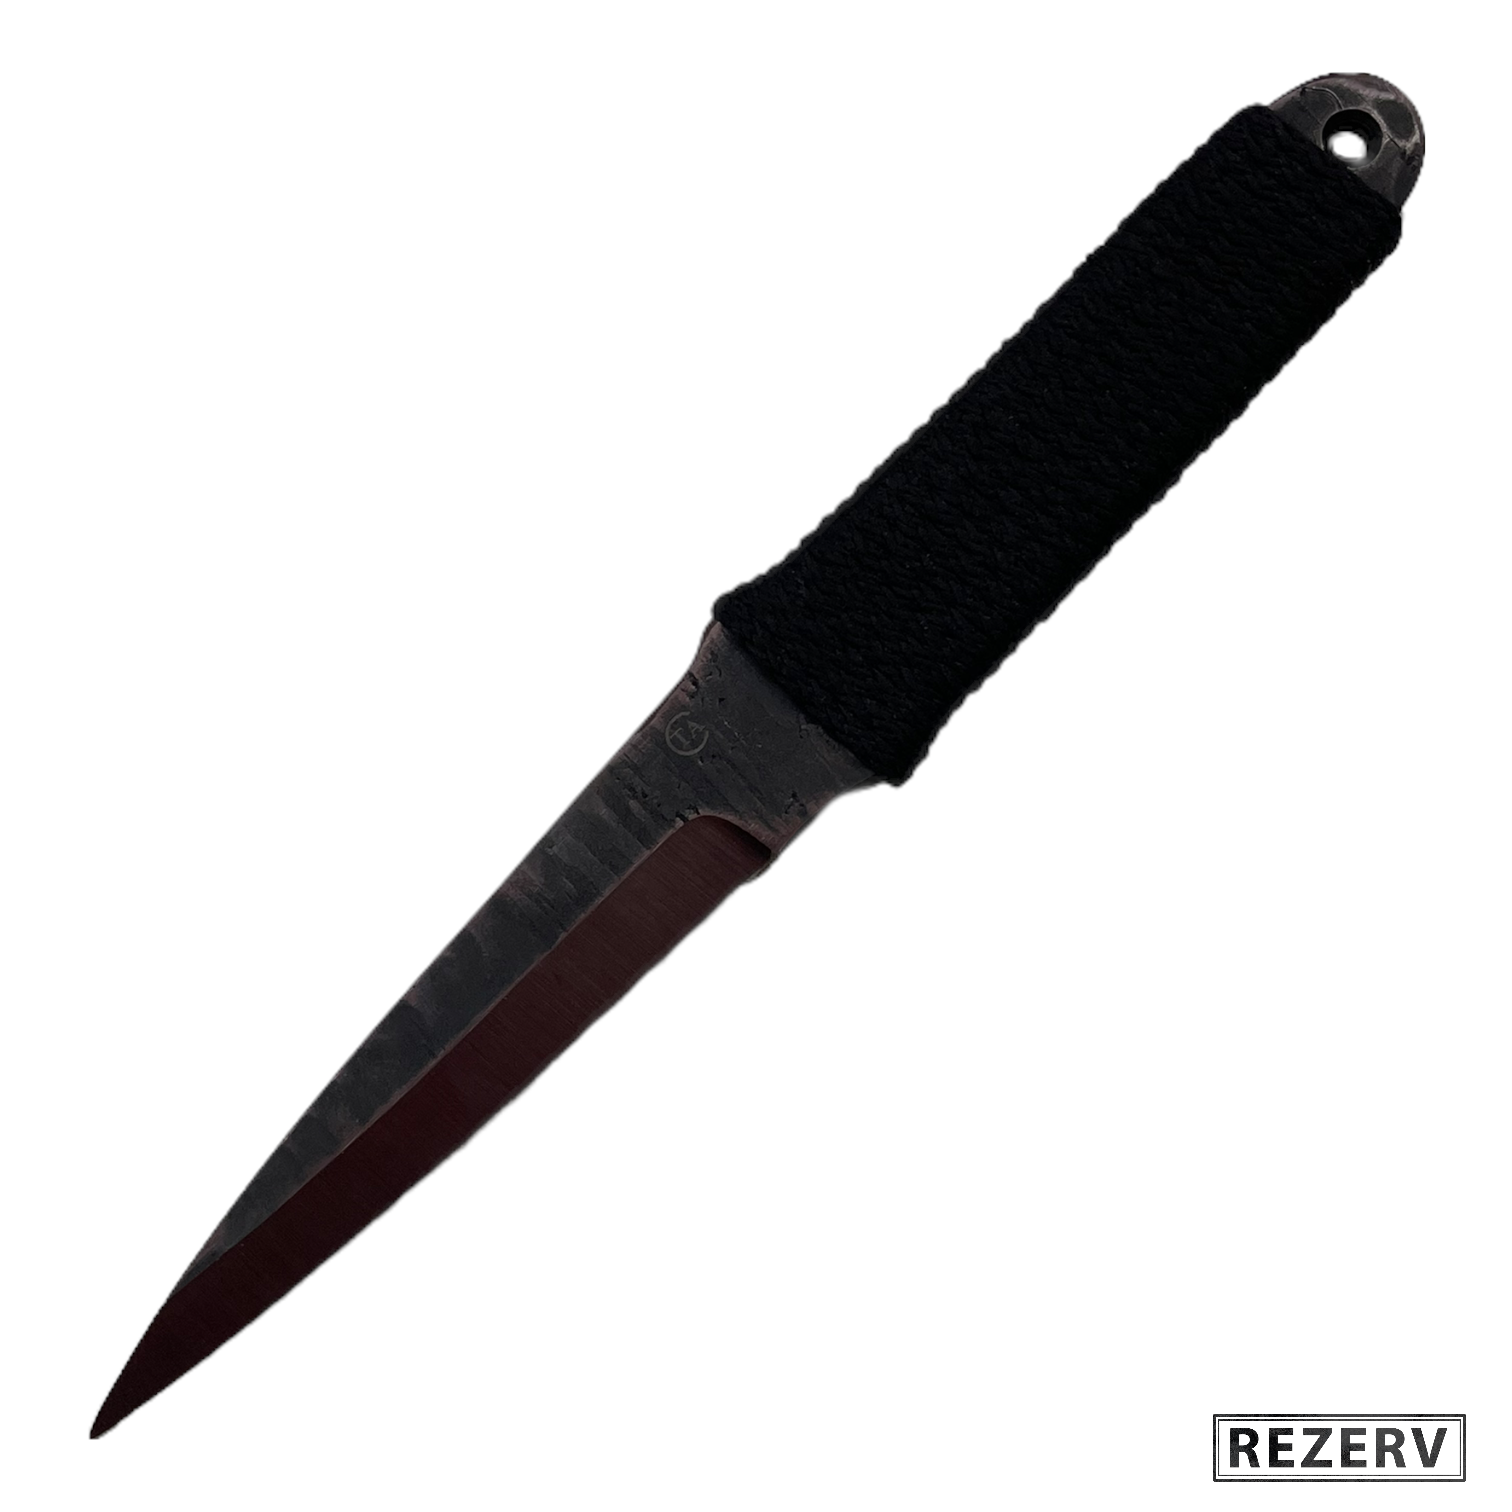 Метательные ножи - ROZETKA | Купить нож для метания или сюрикен в Киеве: цена, отзывы, продажа